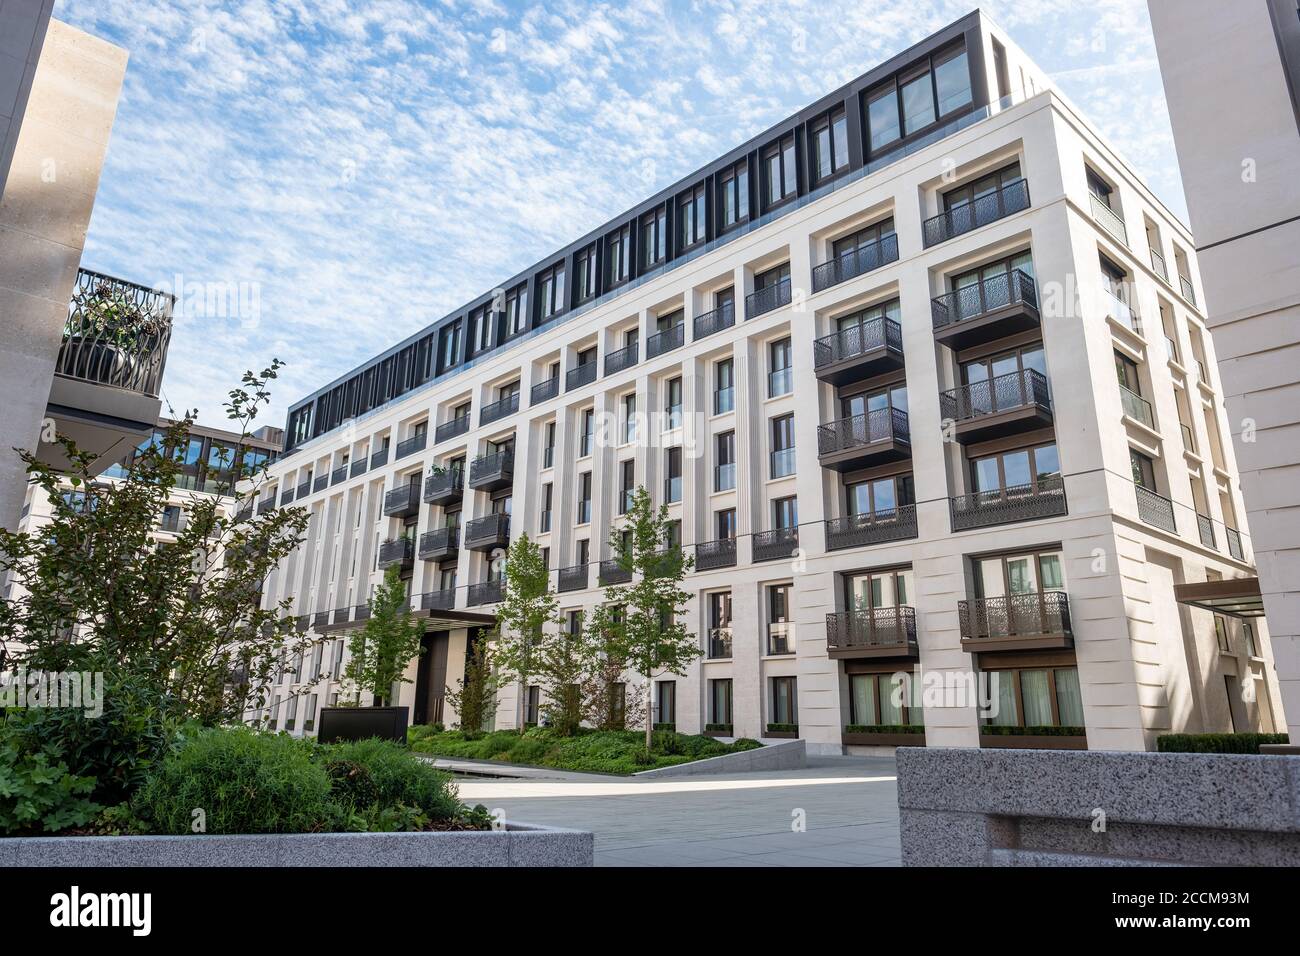 Chelsea Barracks, développement résidentiel au large de Pimlico Road dans l'ouest de Londres- ROYAUME-UNI Banque D'Images